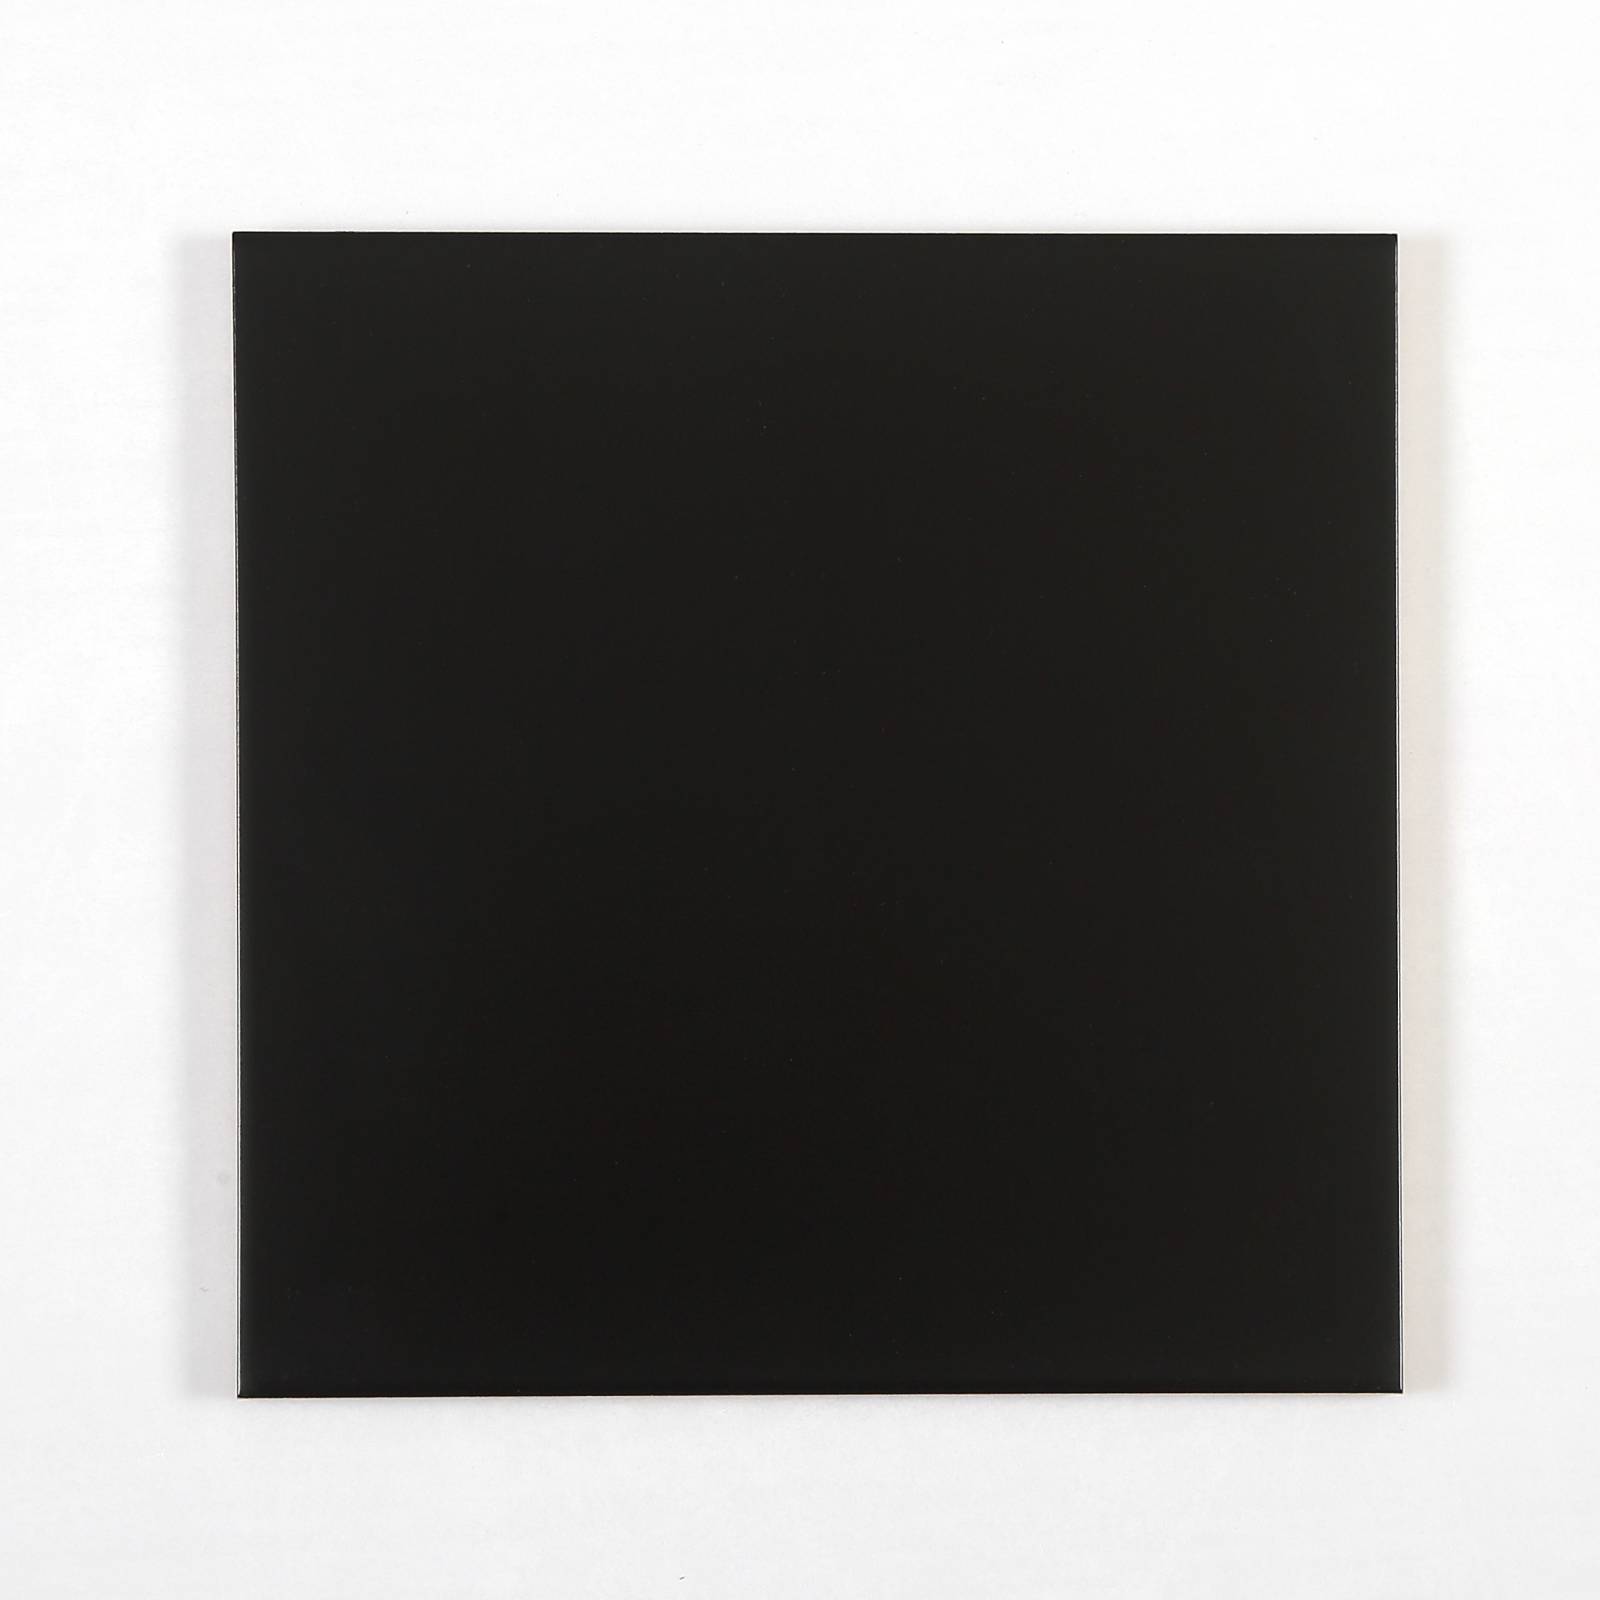 Gạch thẻ trang trí màu đen mờ phẳng KT 100x100mm V1107Y